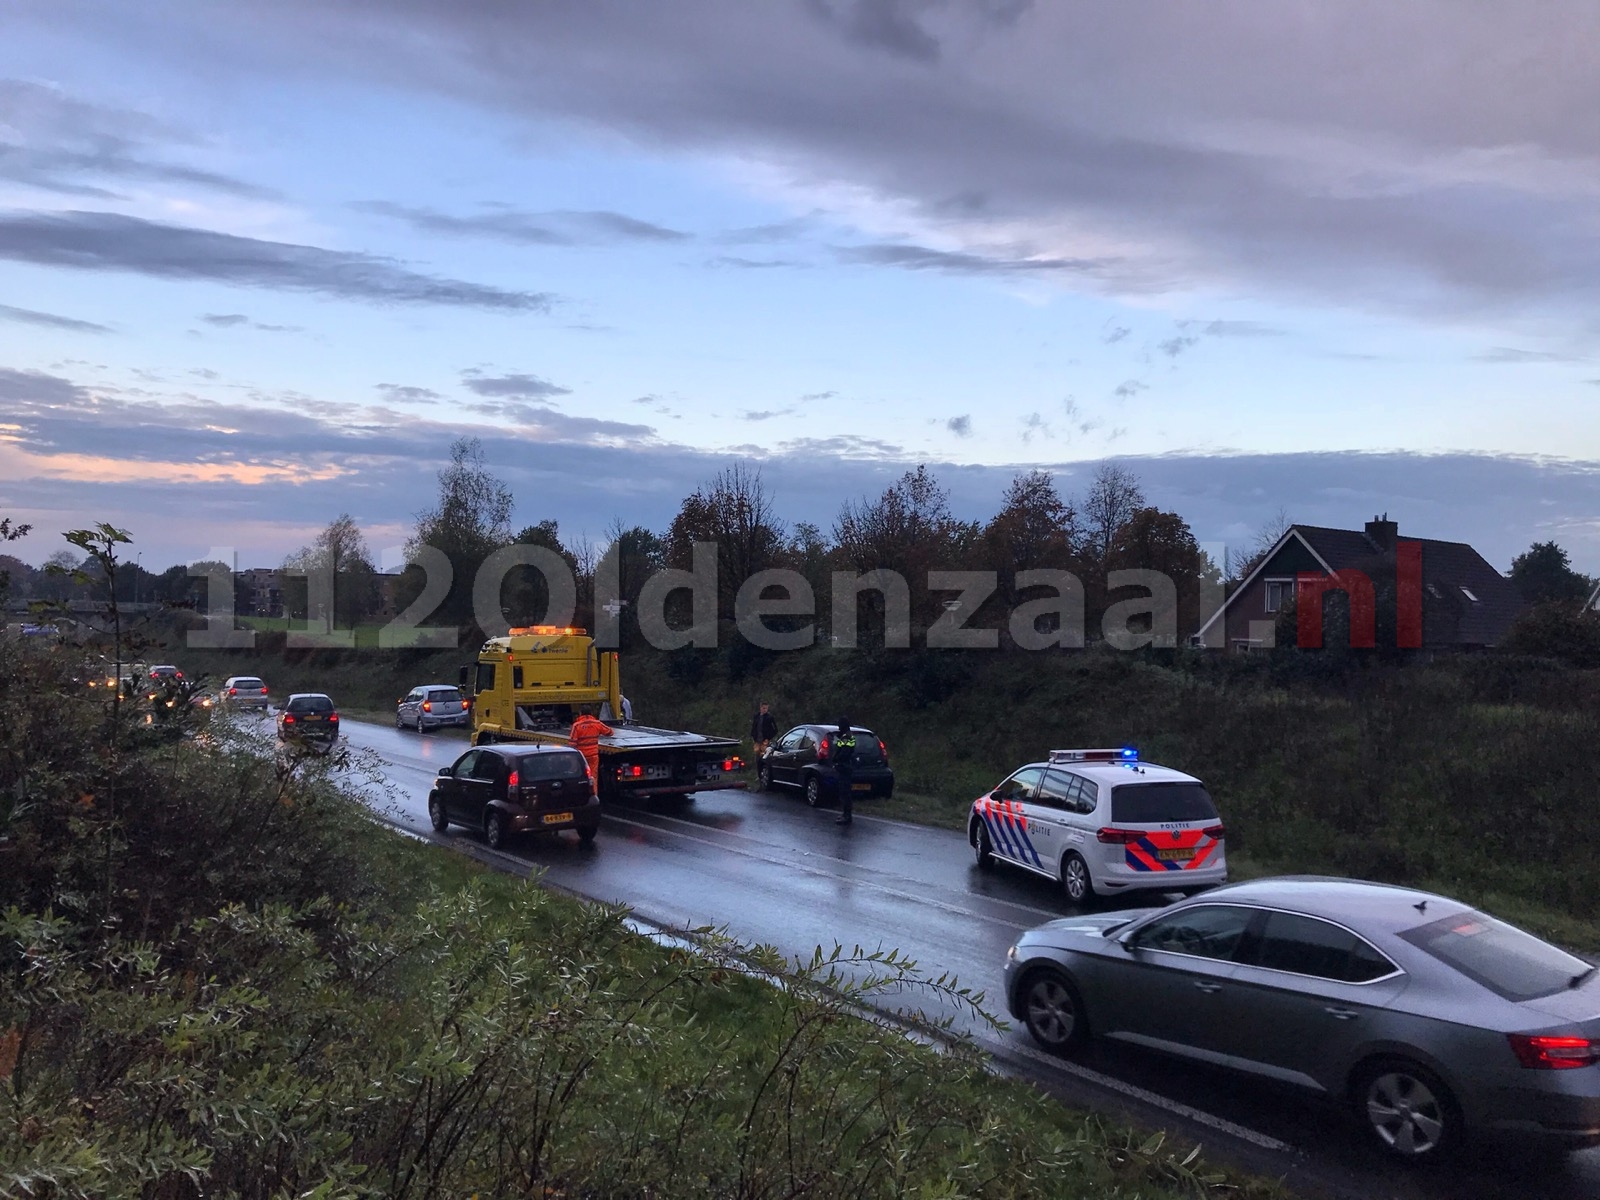 Forse file na aanrijding tussen drie voertuigen op de provinciale rondweg in Oldenzaal